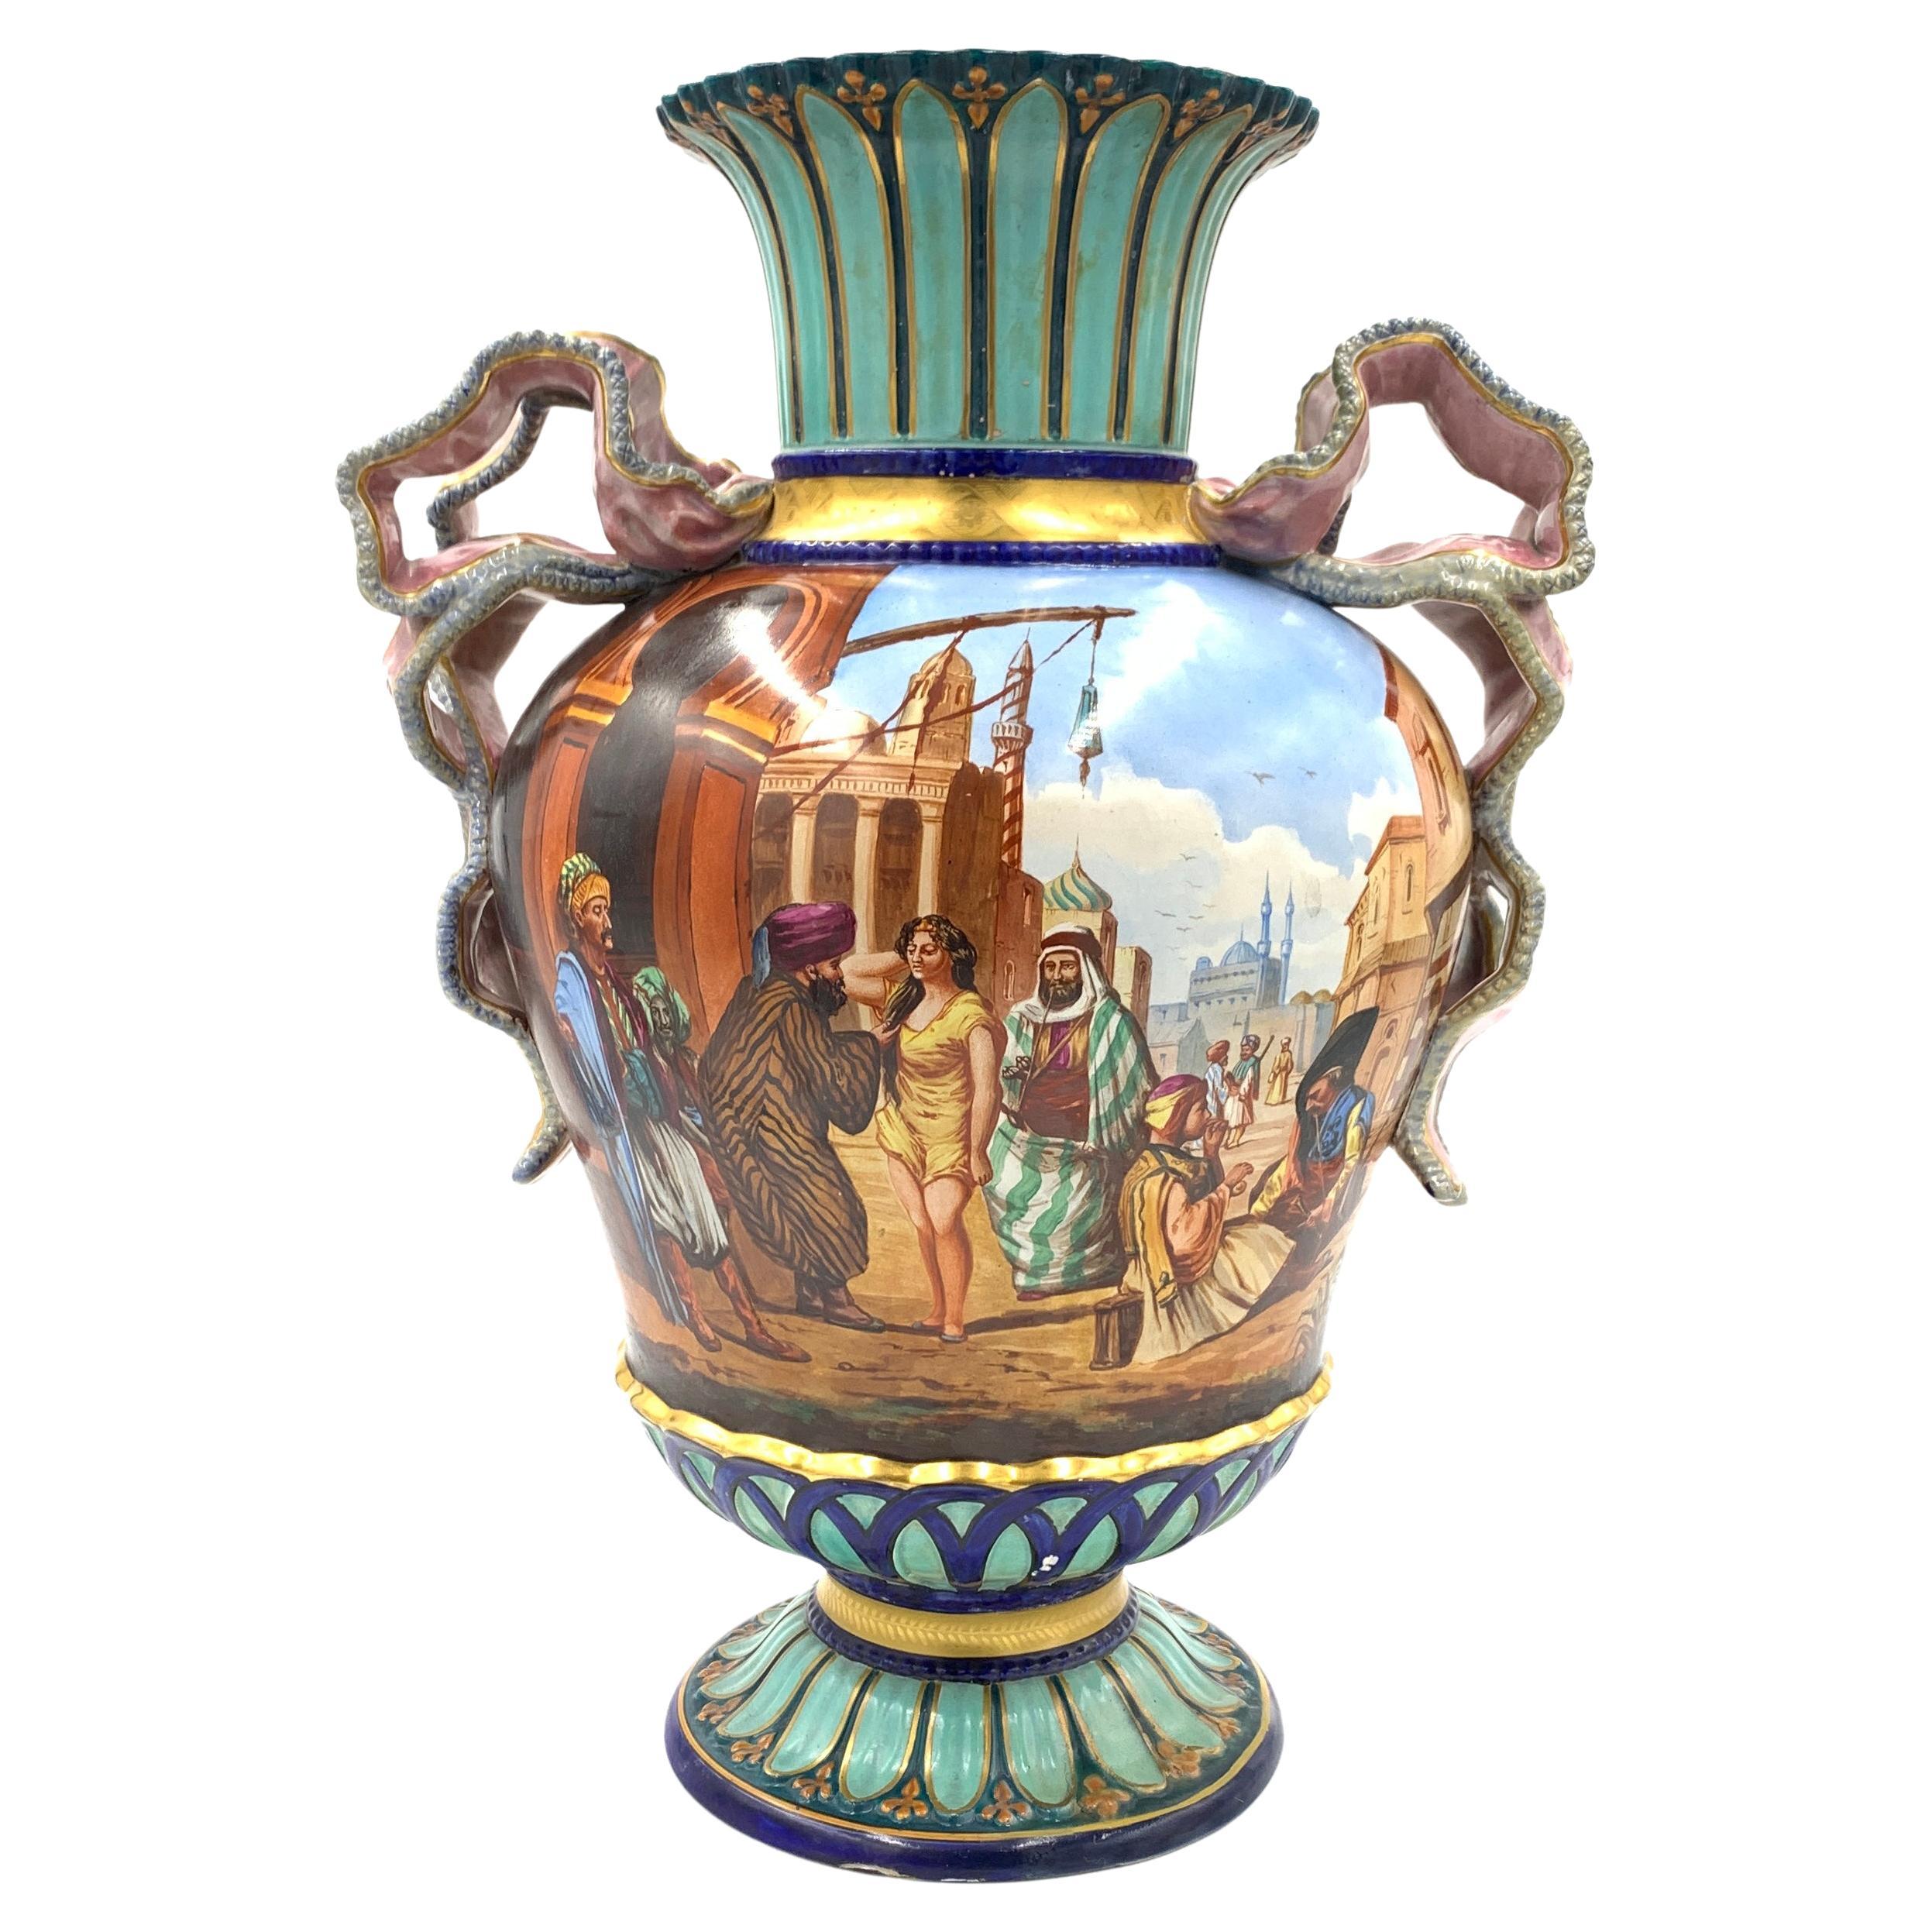 Oriental Vase - 88 For Sale on 1stDibs | oriental vases 